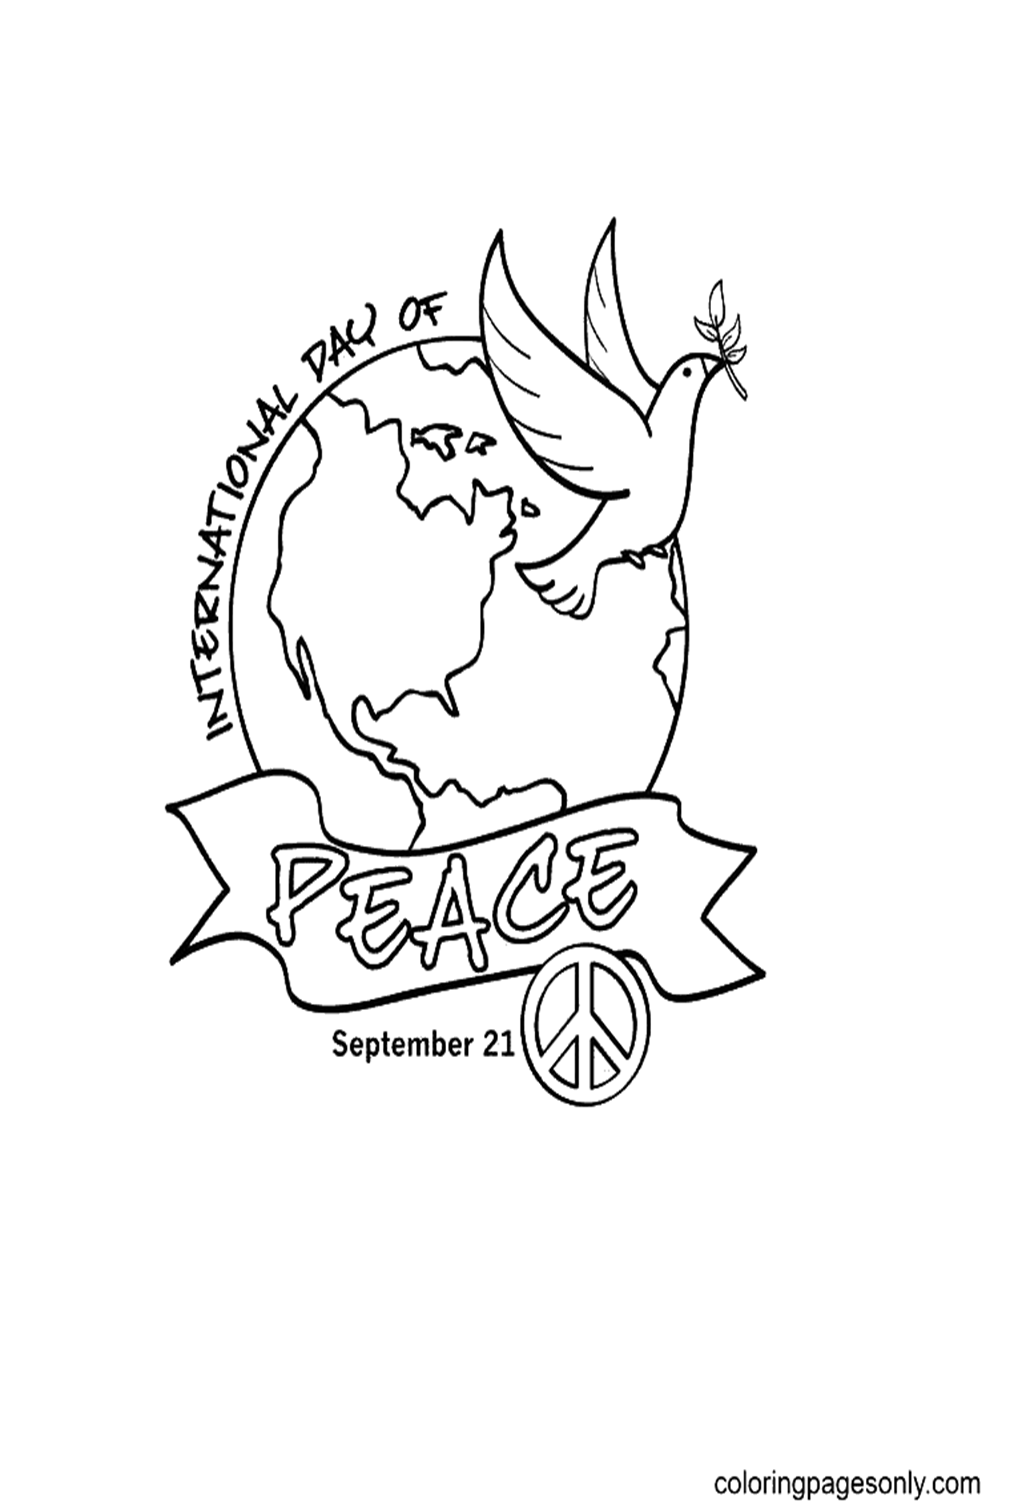 Международный день мира от Международного дня мира